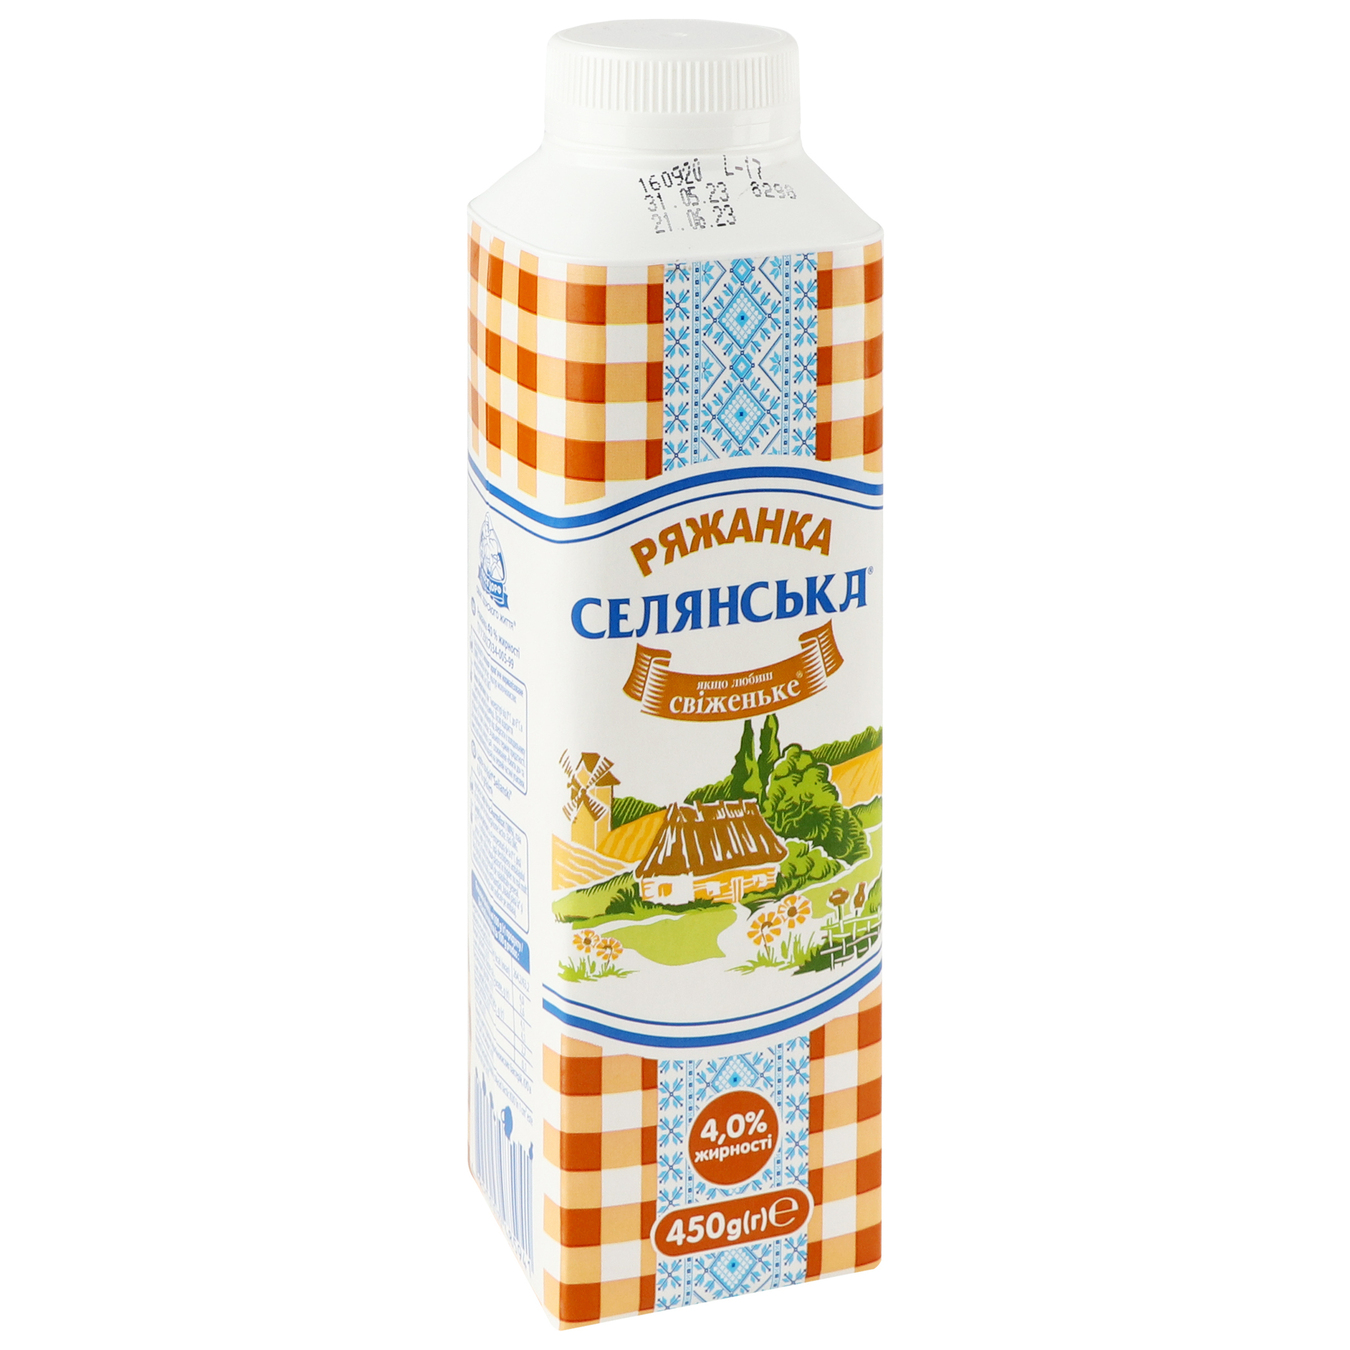 Selyanska Fermented Baked Milk 4% 450g 5